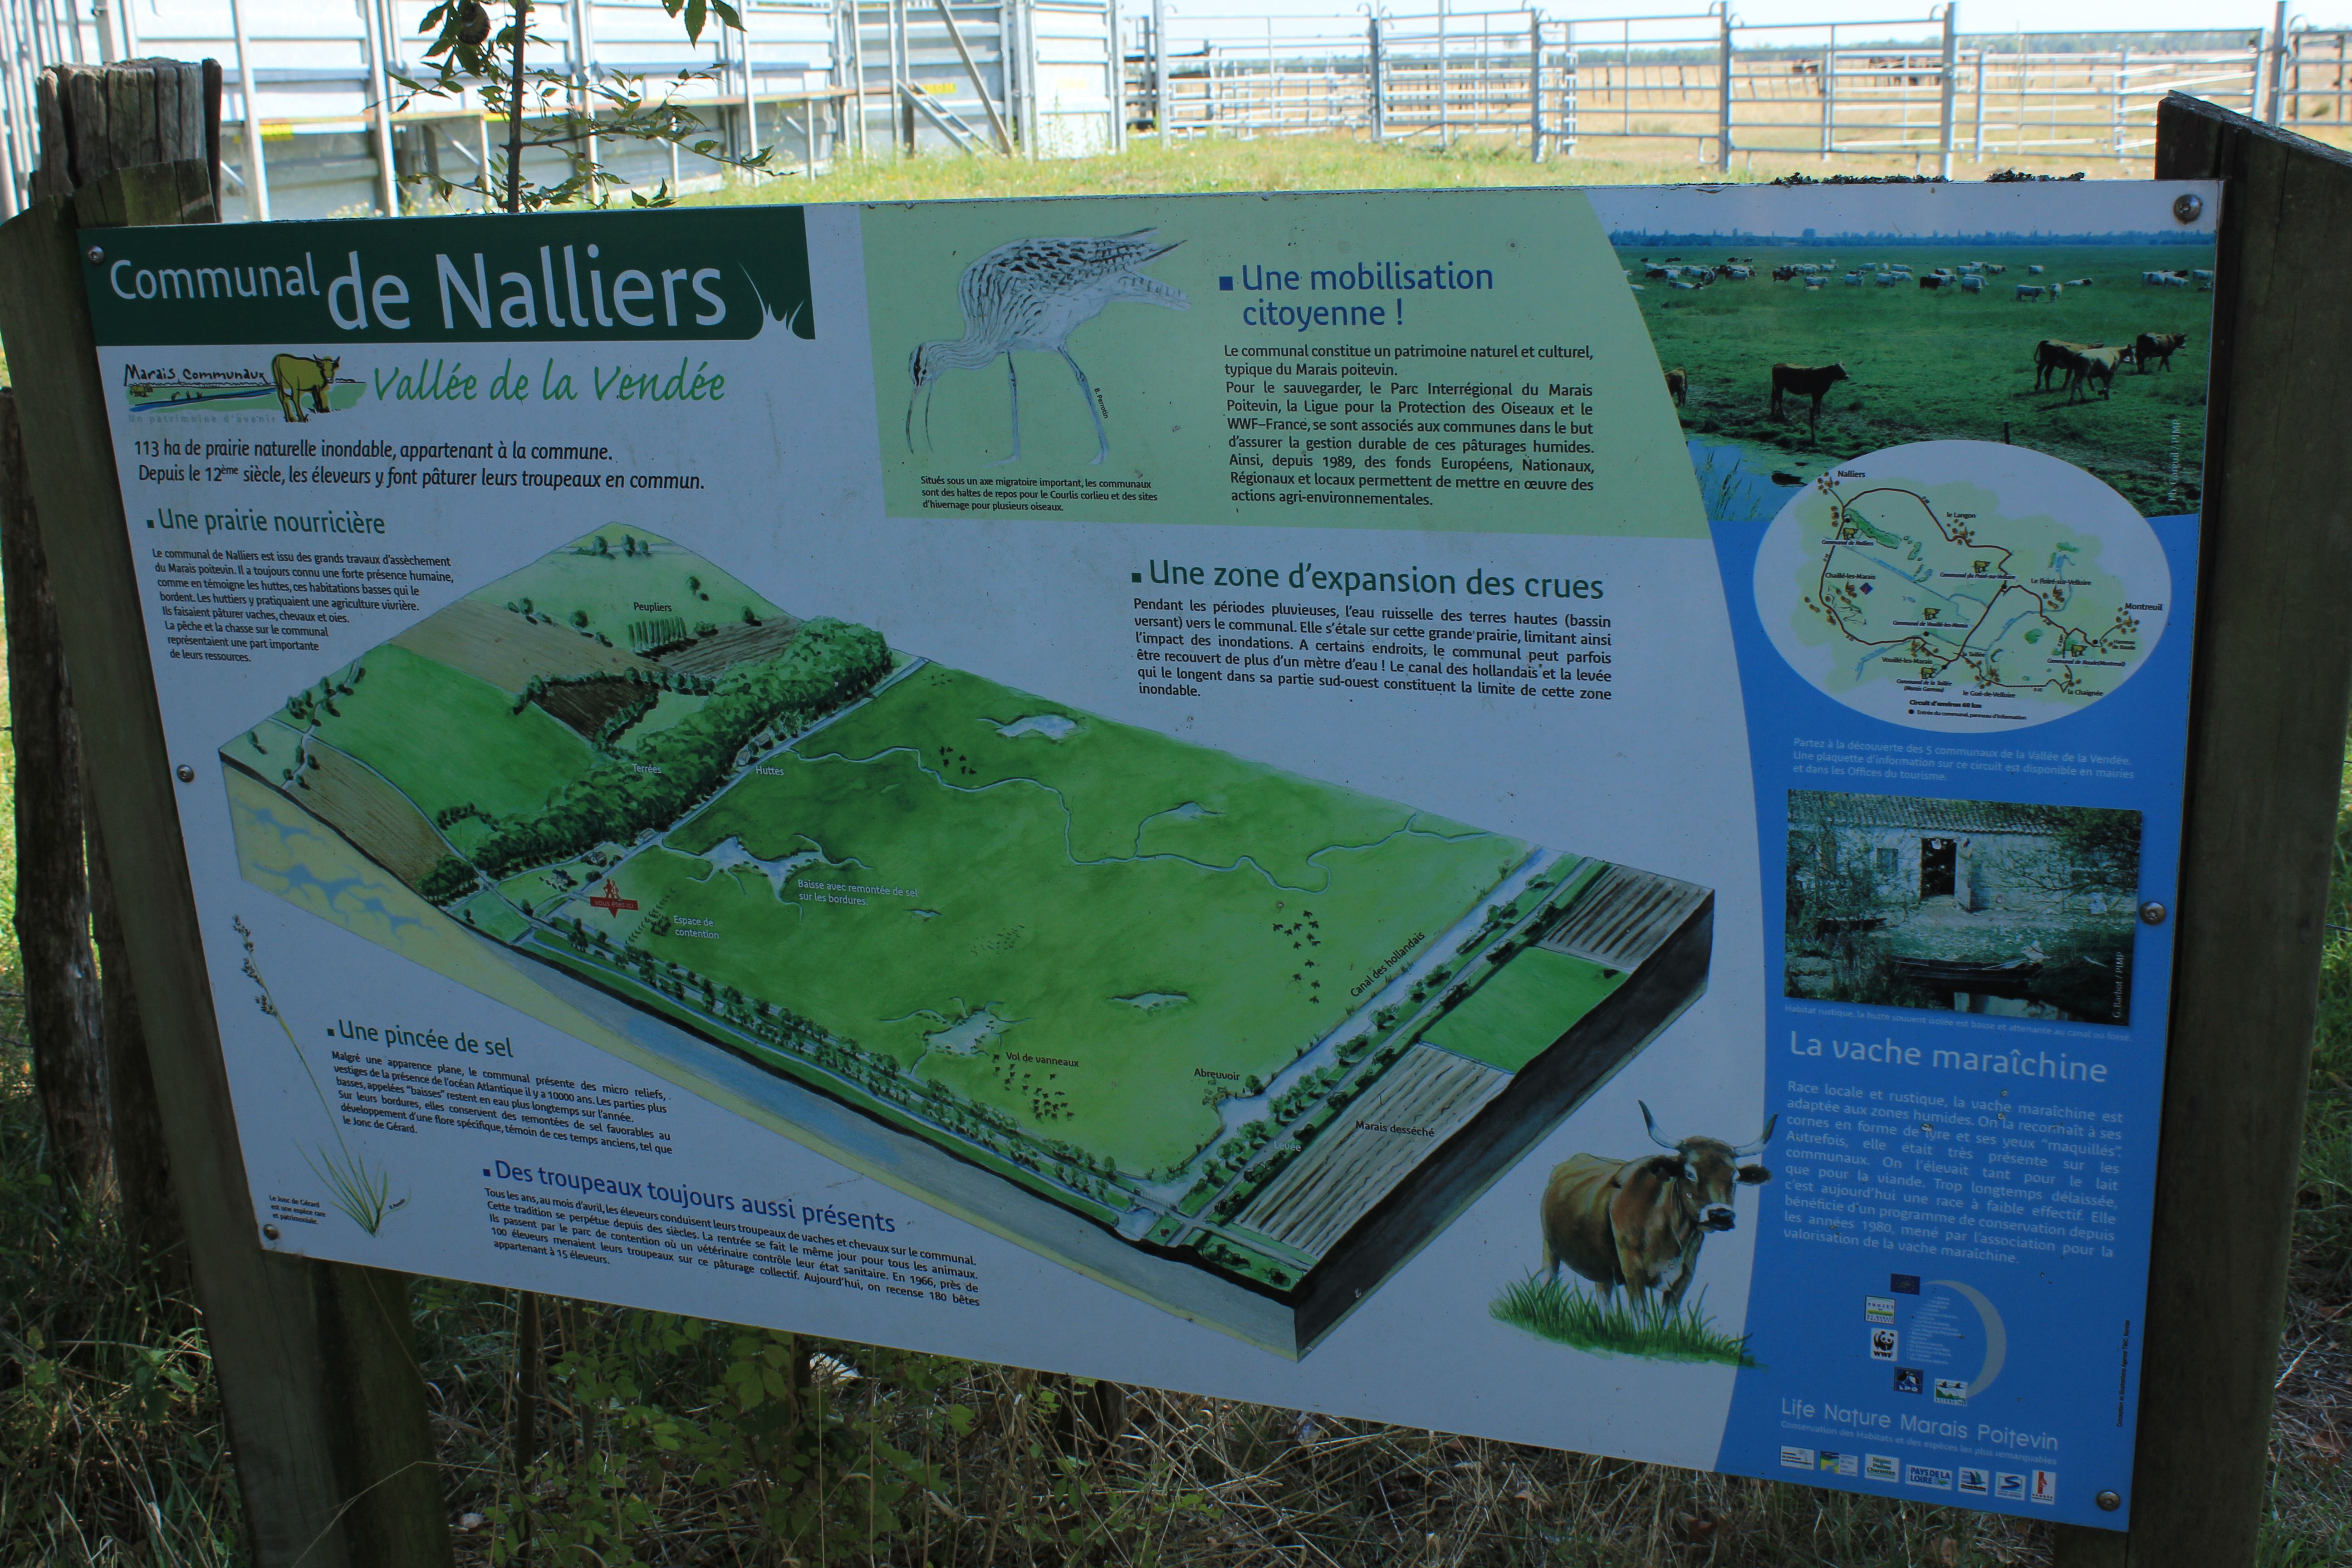 Tájékoztató tábla Nalliers településen megvalósult projektről.